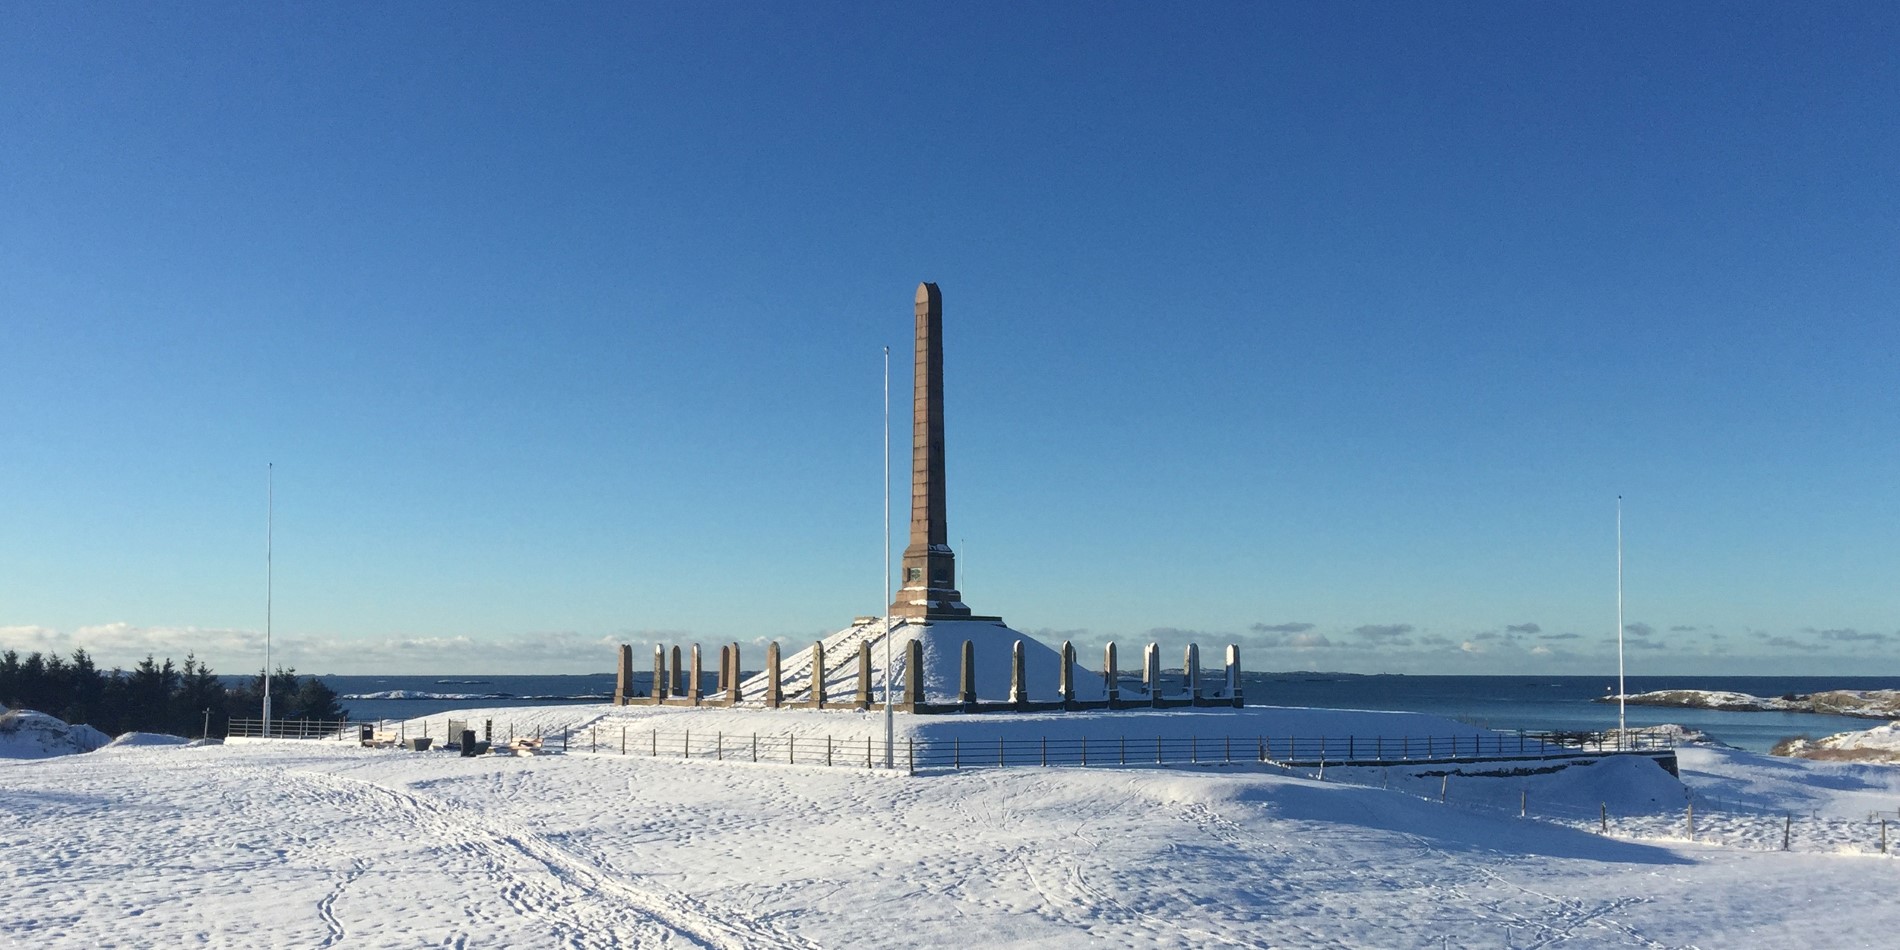 Haugesund tower in winter